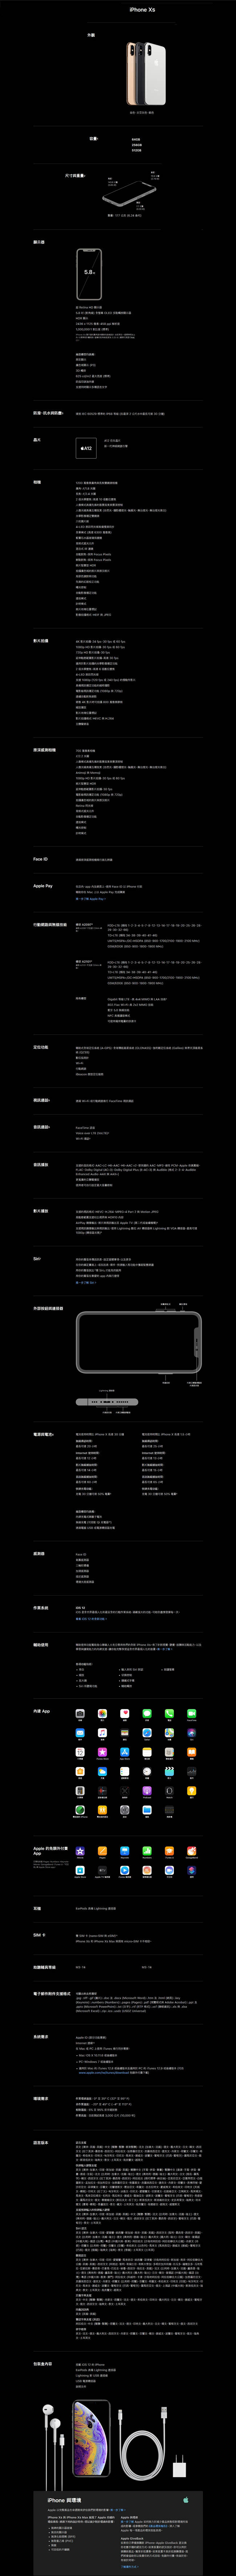 Apple iPhone XS 5.8吋 512G 智慧型手機